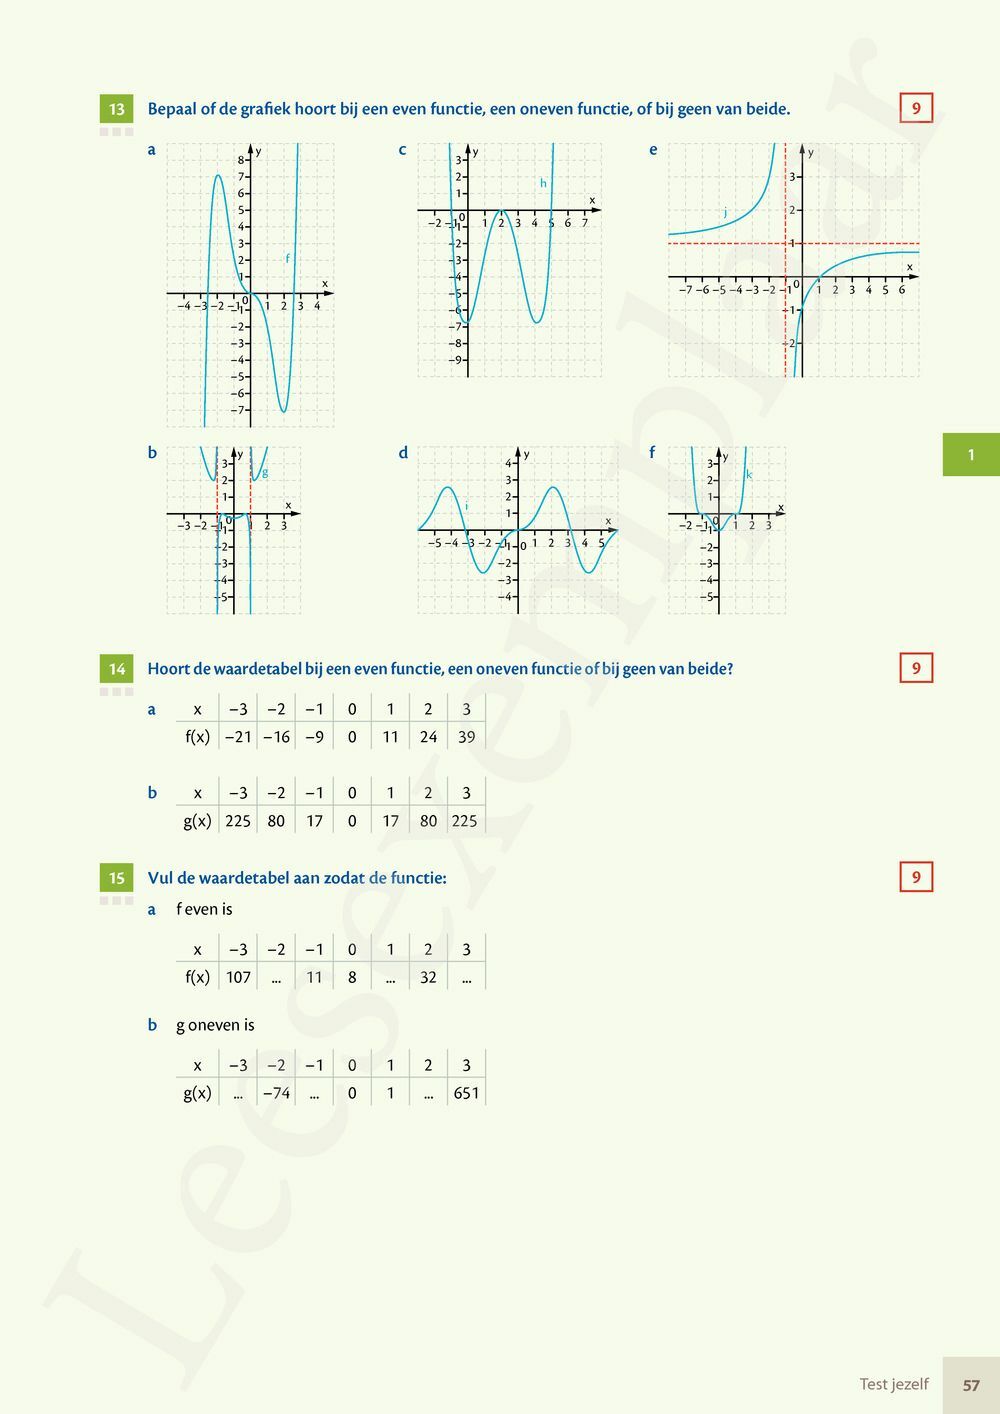 Preview: Matrix Wiskunde 5/6 Kansrekenen, statistiek Doorstroom Basis en Dubbele finaliteit Leerwerkboek (incl. Pelckmans Portaal)